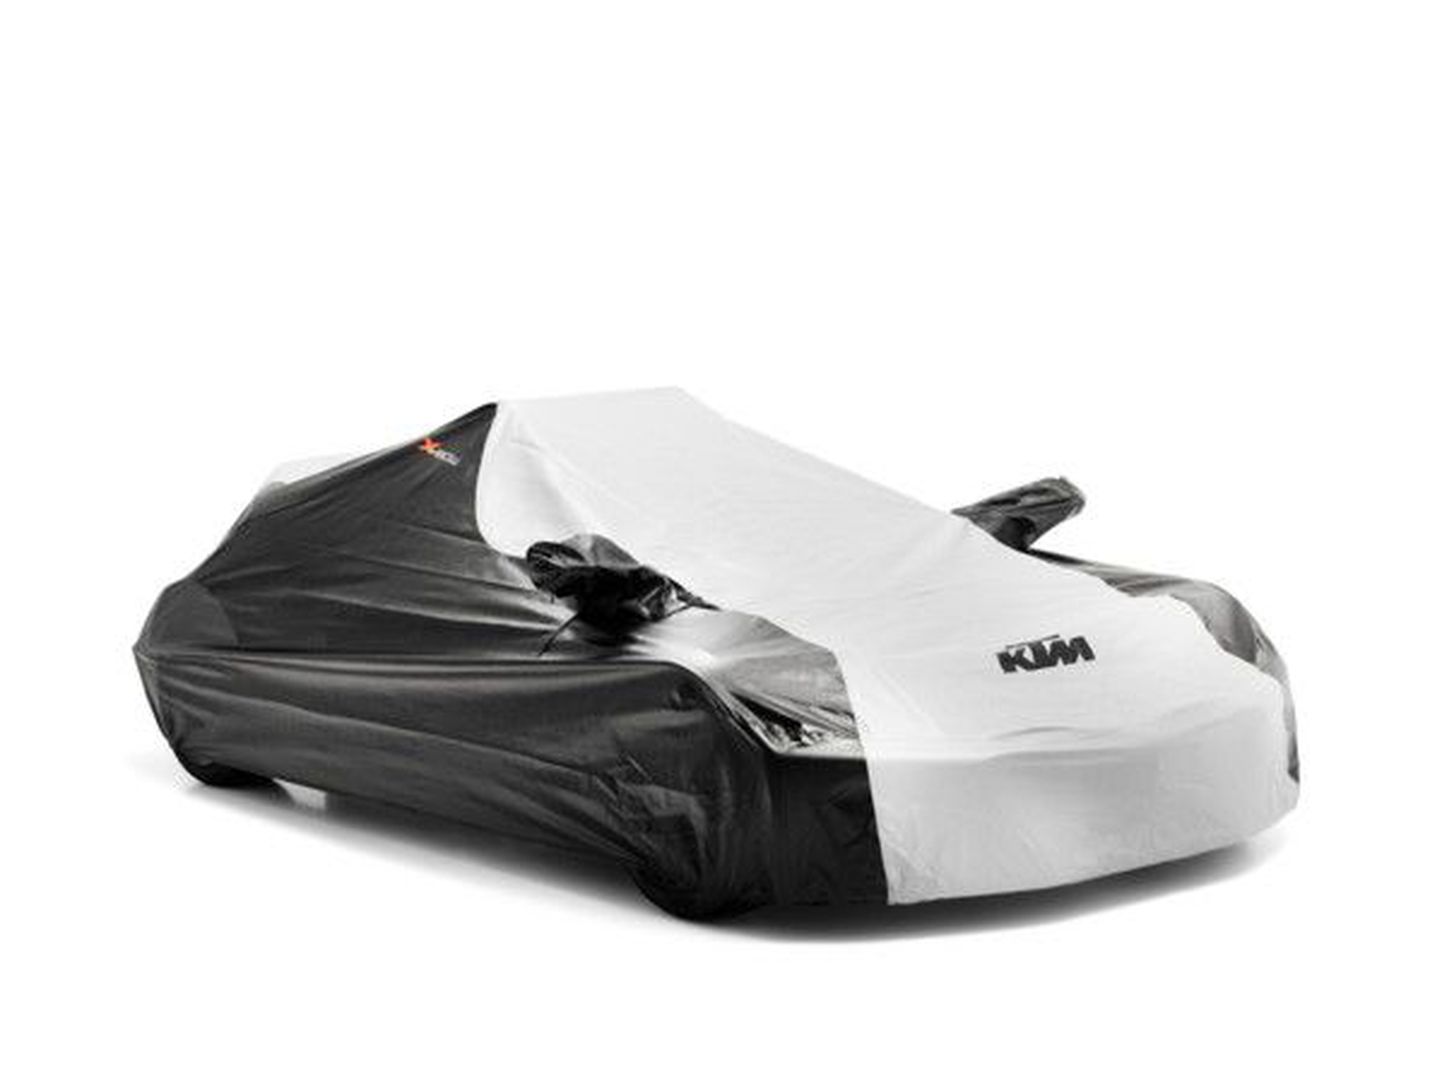 Fiati tuuniguharu Abarth plaanib aastaks 2013 müügile tuua oma versiooni Austria mootorrattatootja KTM radikaalsest sportautost X-Bow.